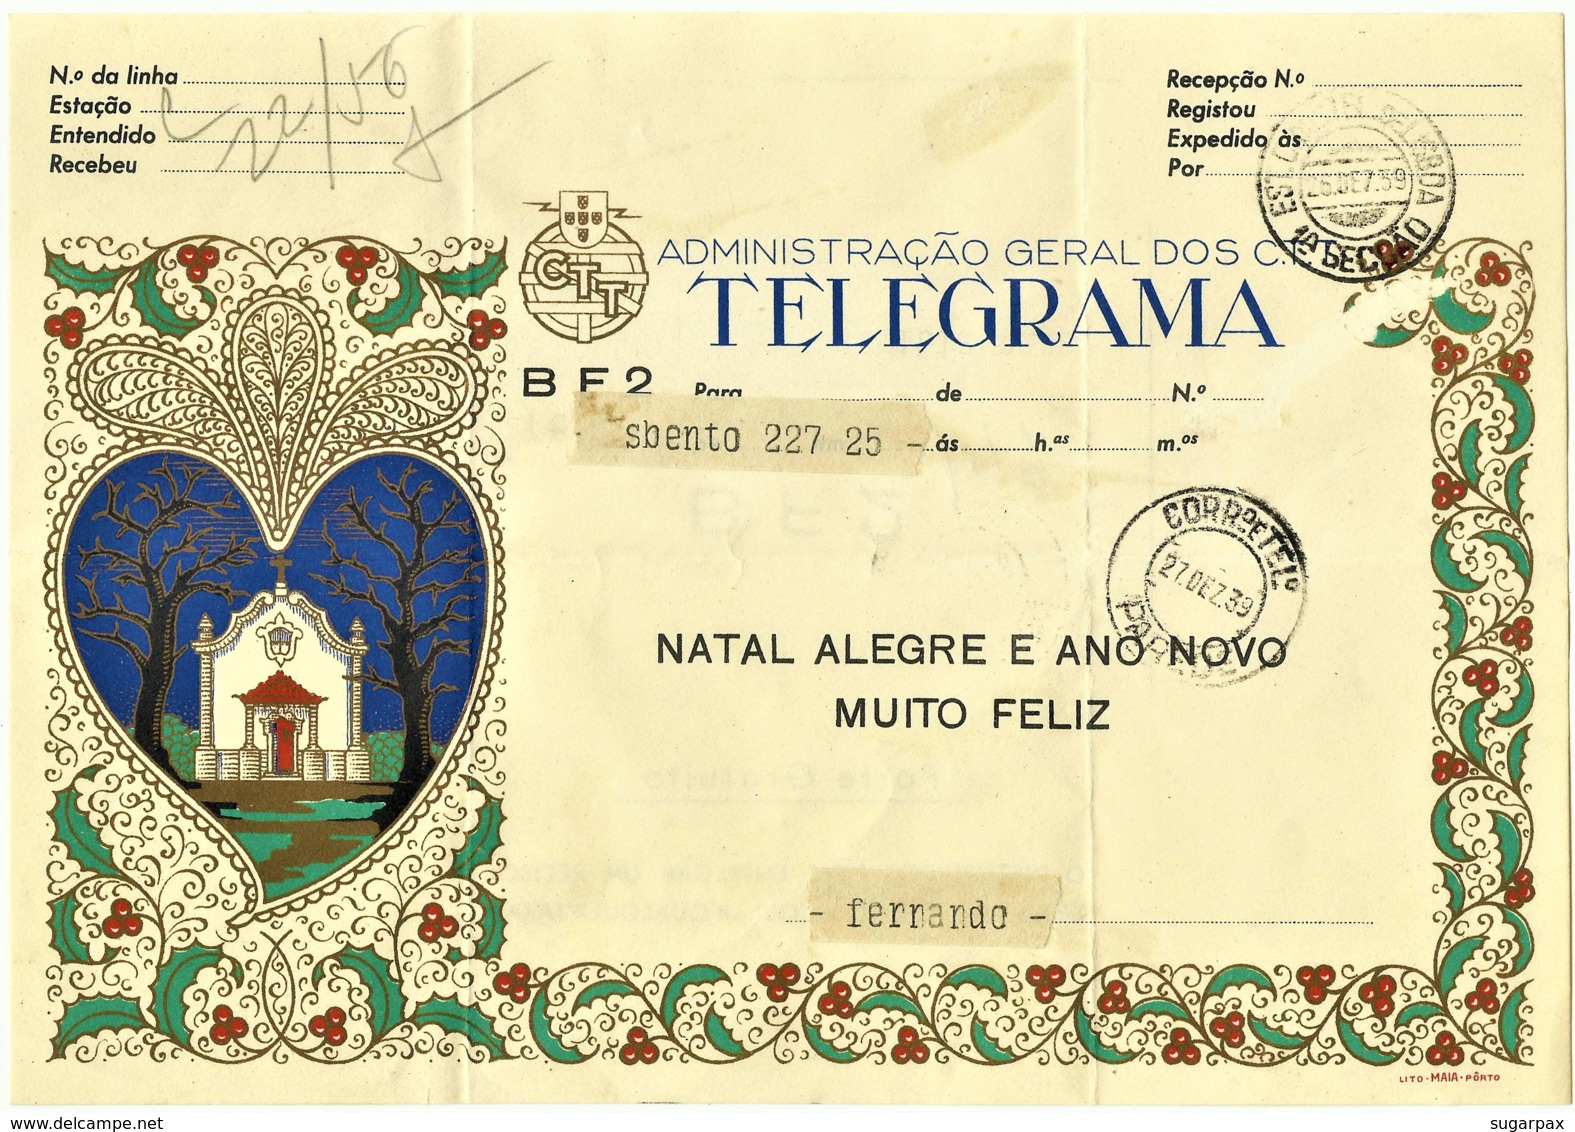 BF2 - 1959 - TELEGRAMA - Administração Geral Dos C.T.T. - NATAL ALEGRE E ANO NOVO MUITO FELIZ - Portugal - Covers & Documents